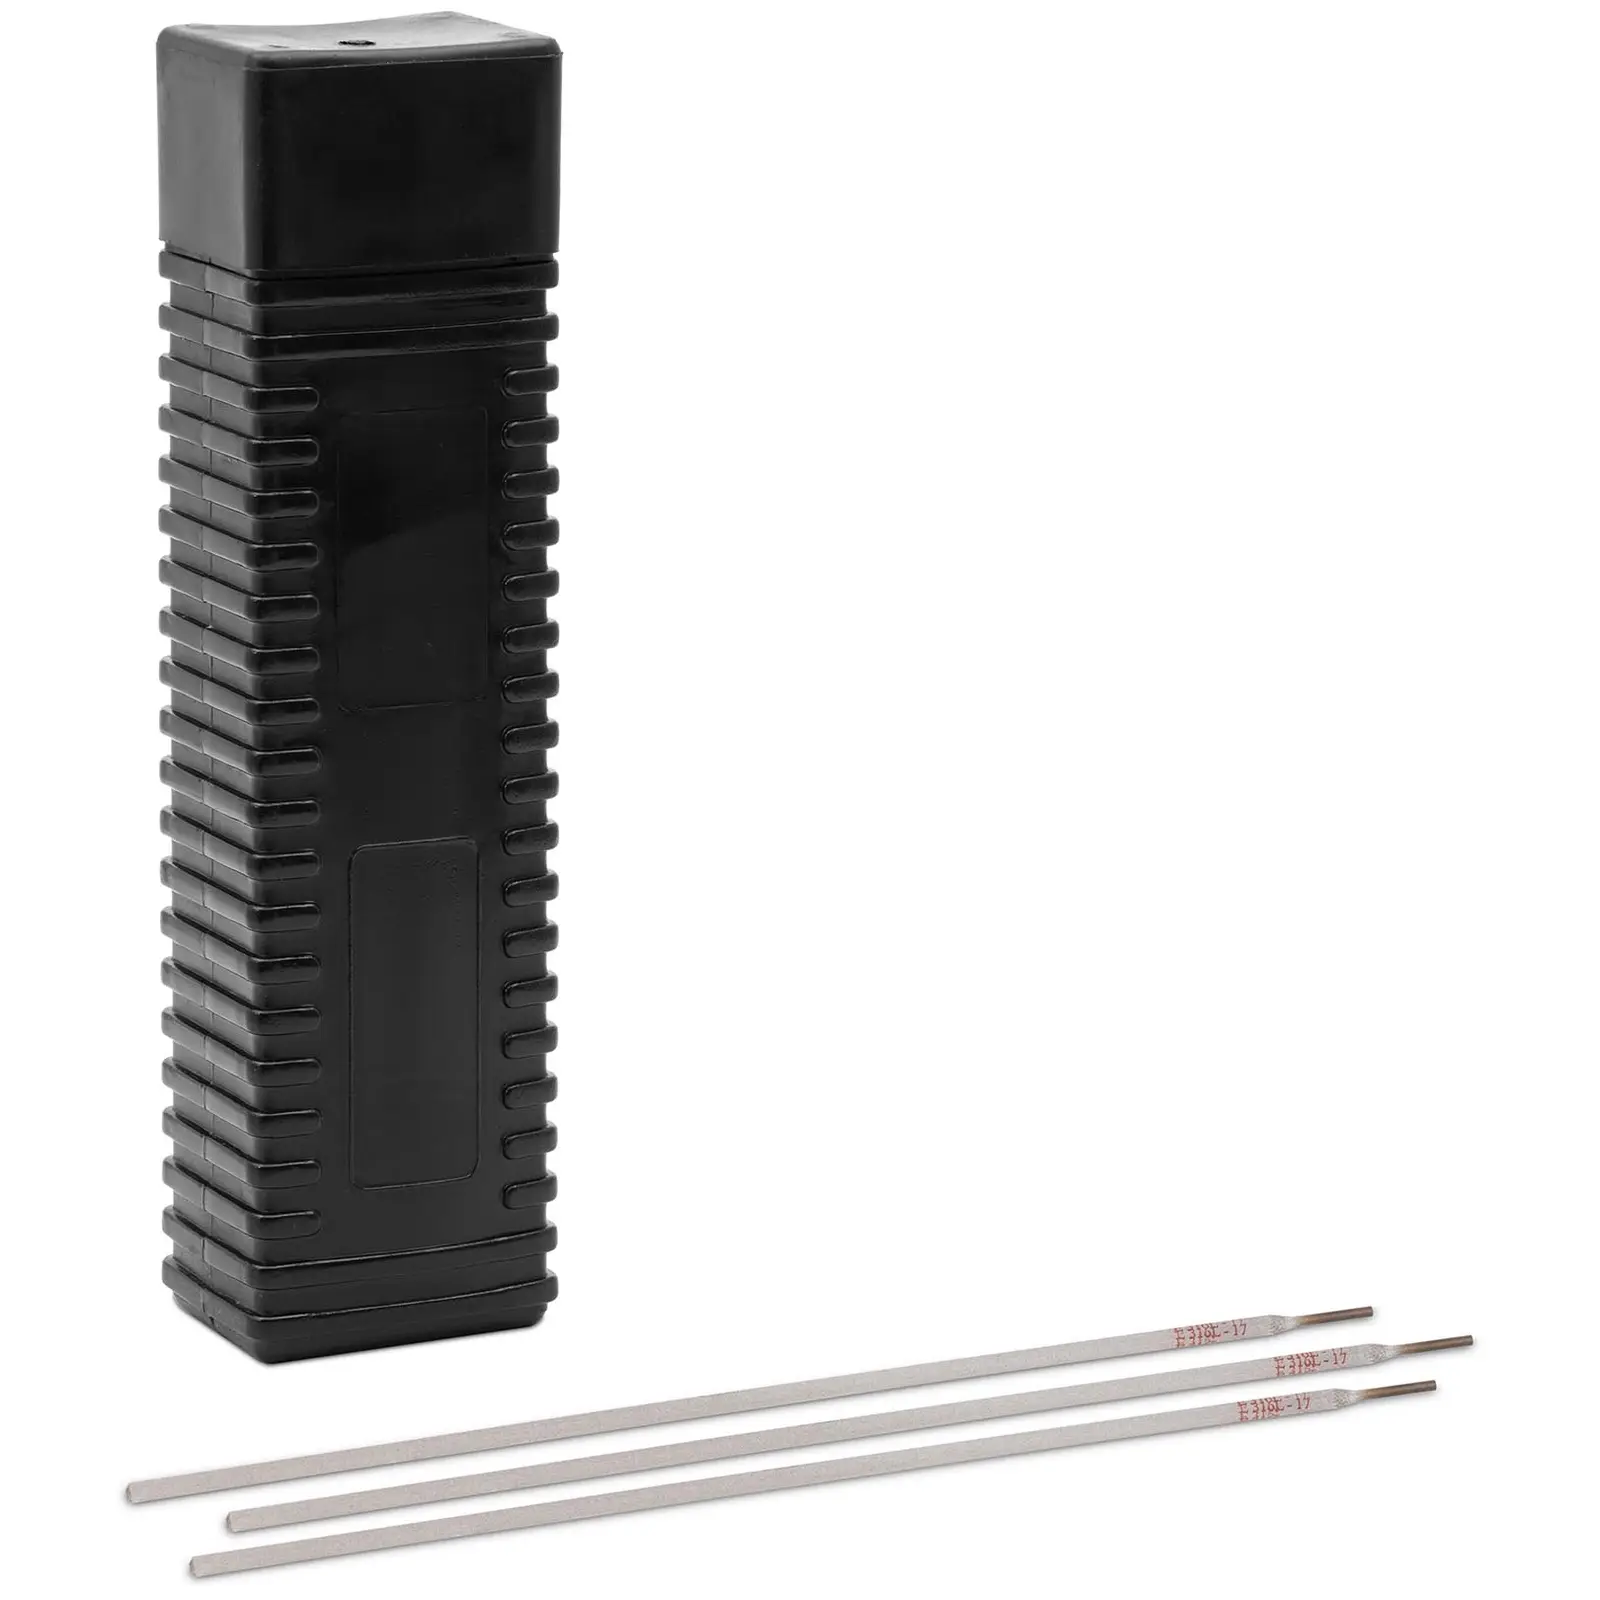 Svetselektroder för rostfritt stål - E316L-17 - Rutilsyra - 3.25 x 350 mm - 5 kg